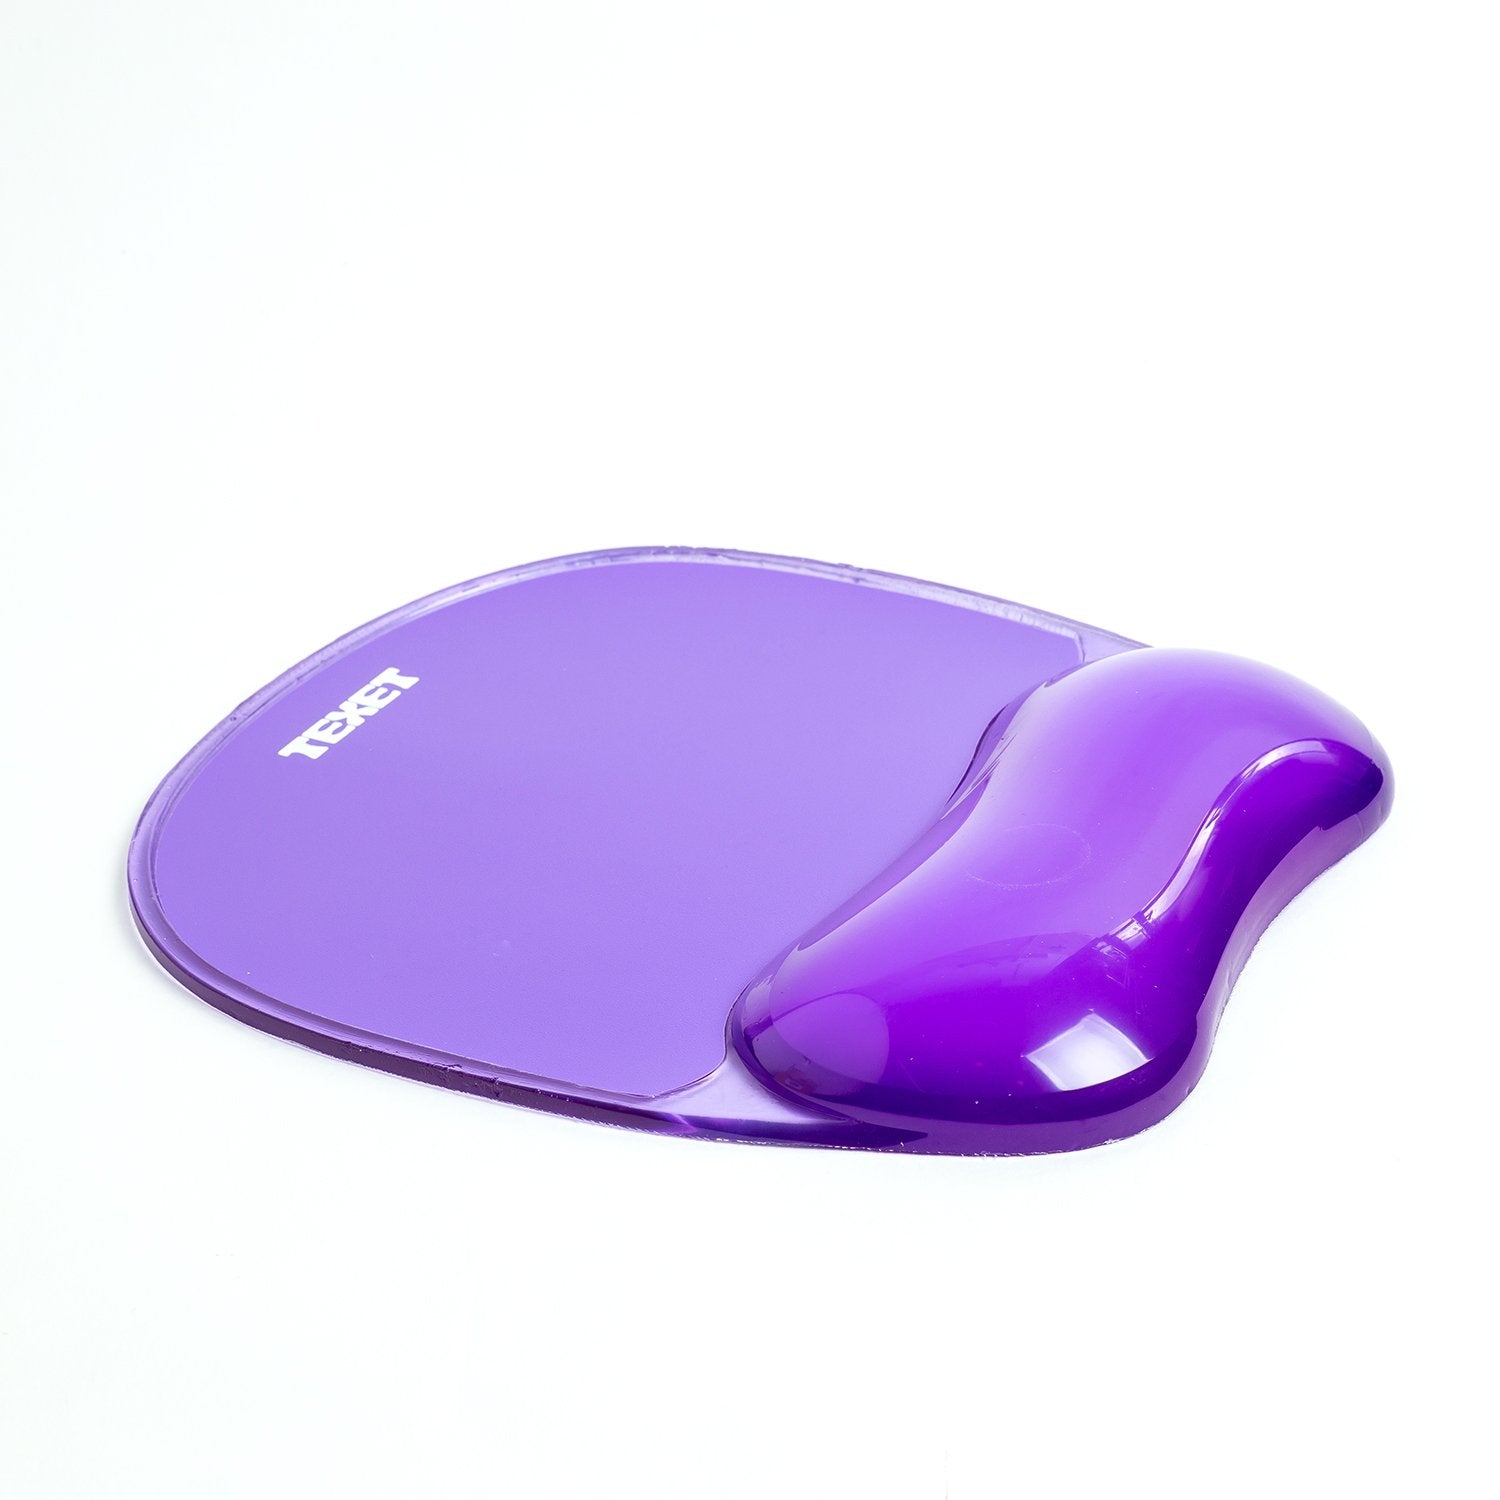 Gel Mouse Mat Purple